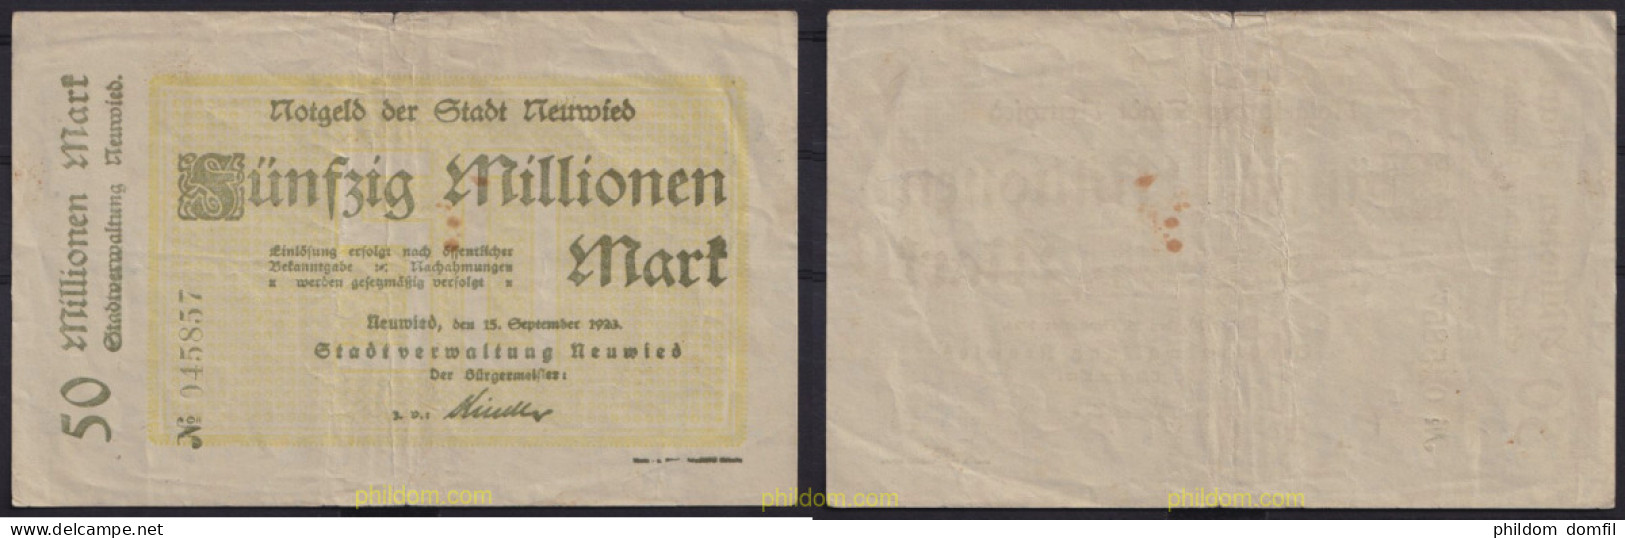 3681 ALEMANIA 1923 GERMANY 50000000 MARK NEUWIED 1923 - Bestuur Voor Schulden